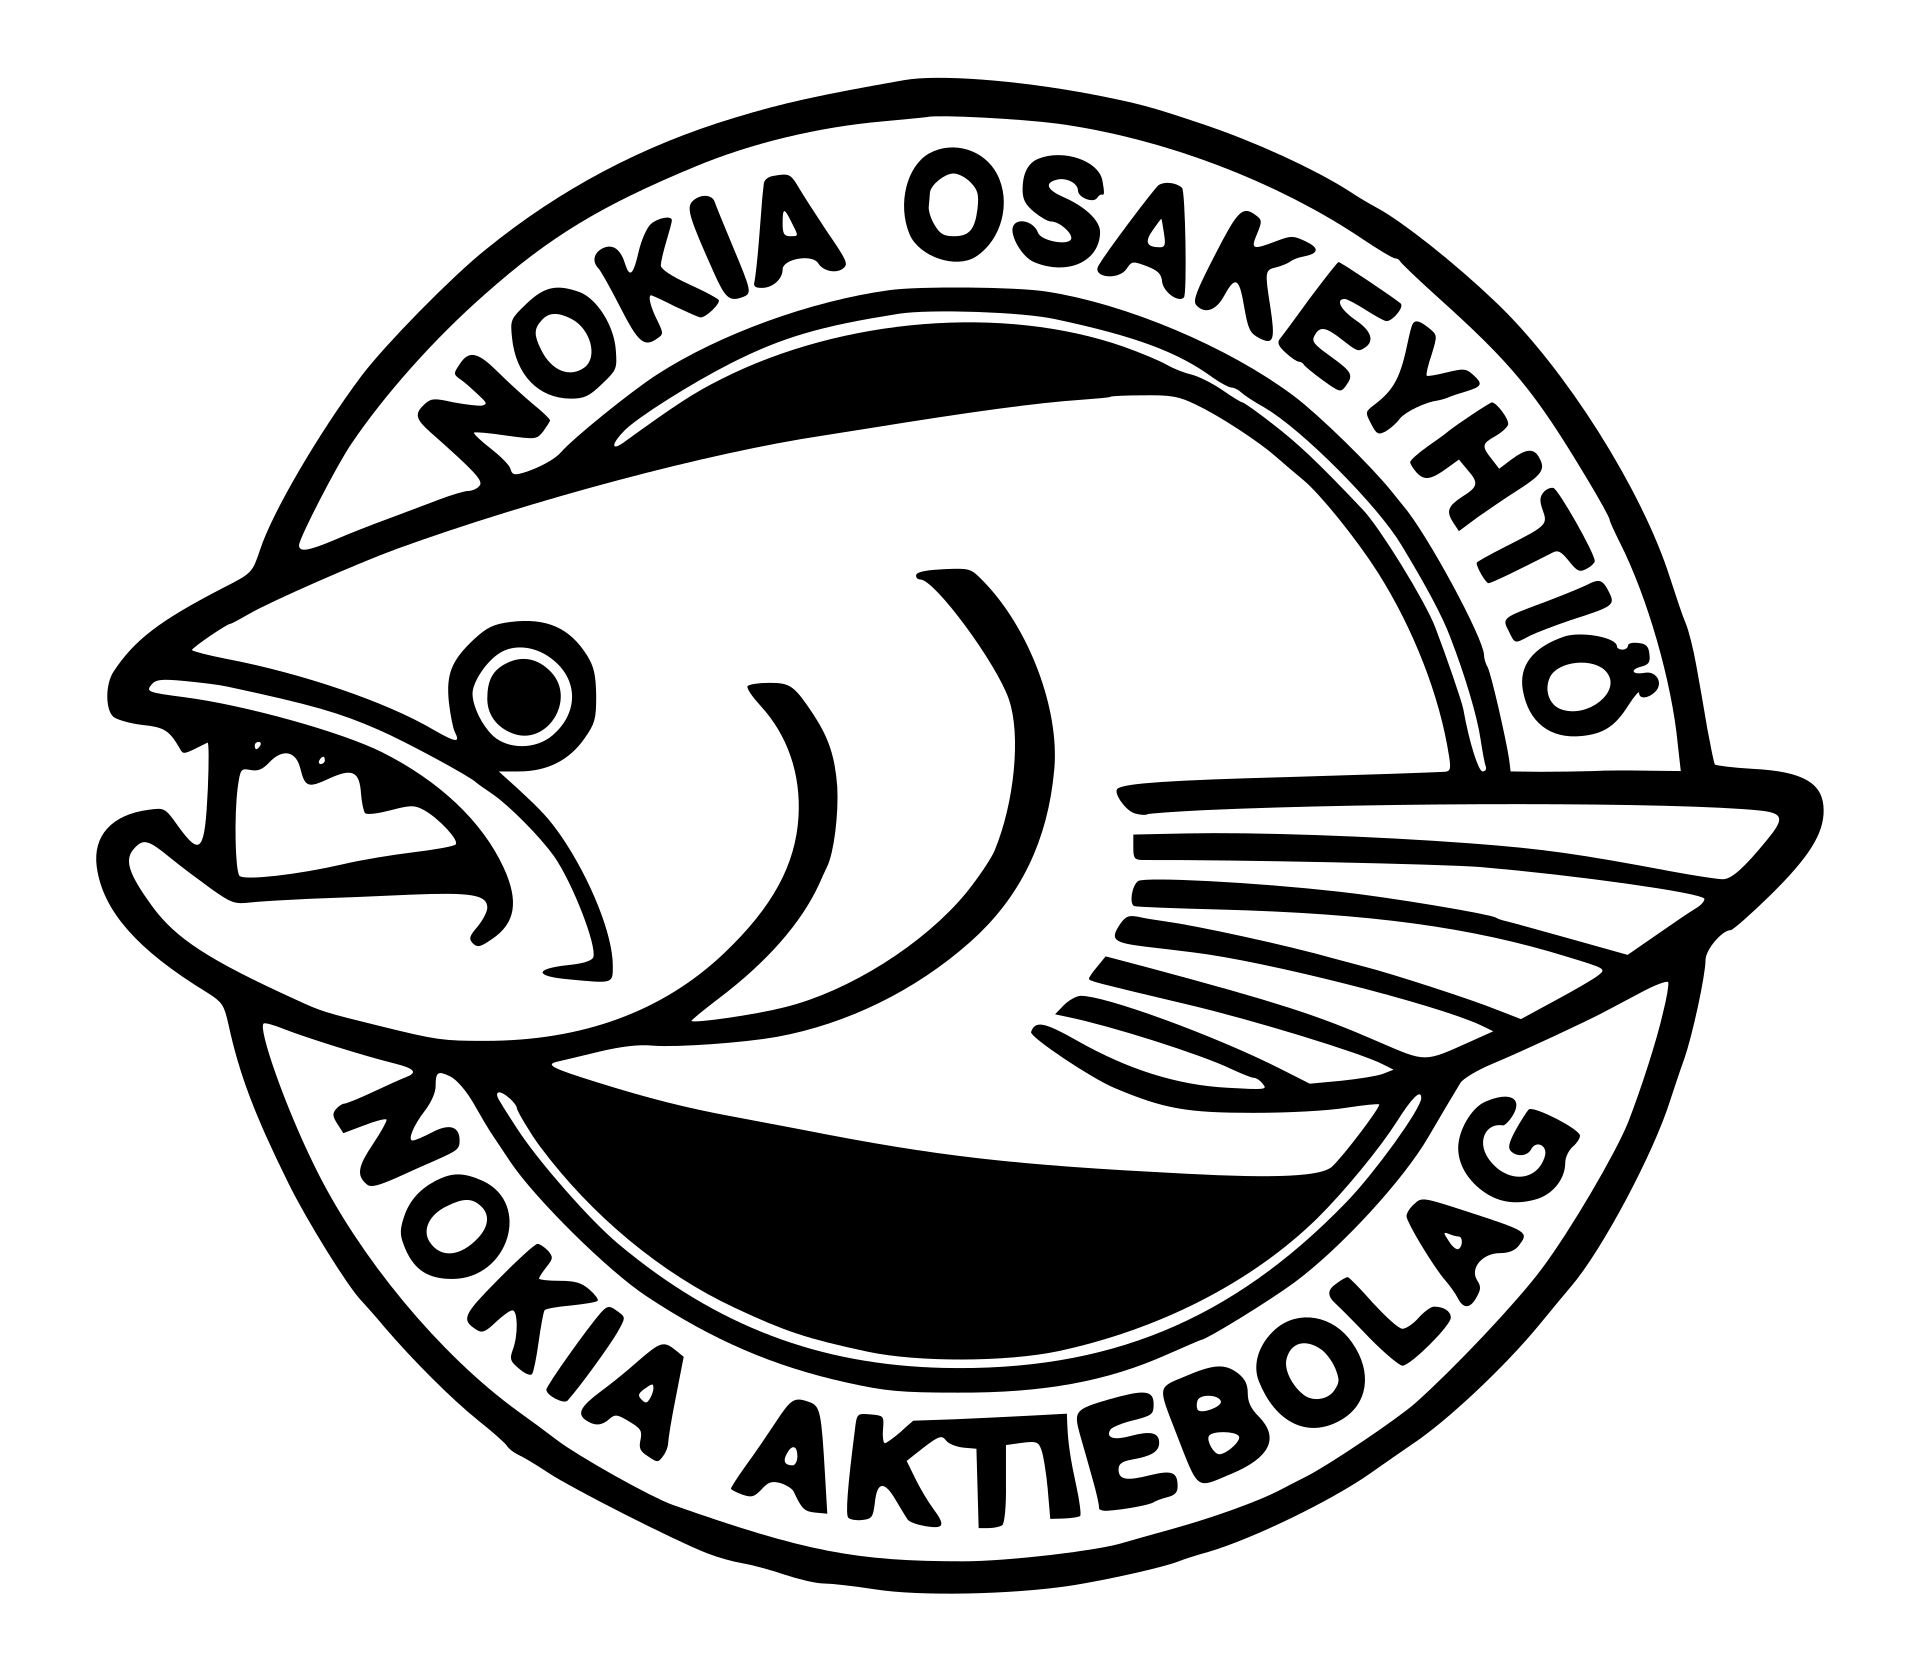 Nokia Osakeyhtiö logo, 1965